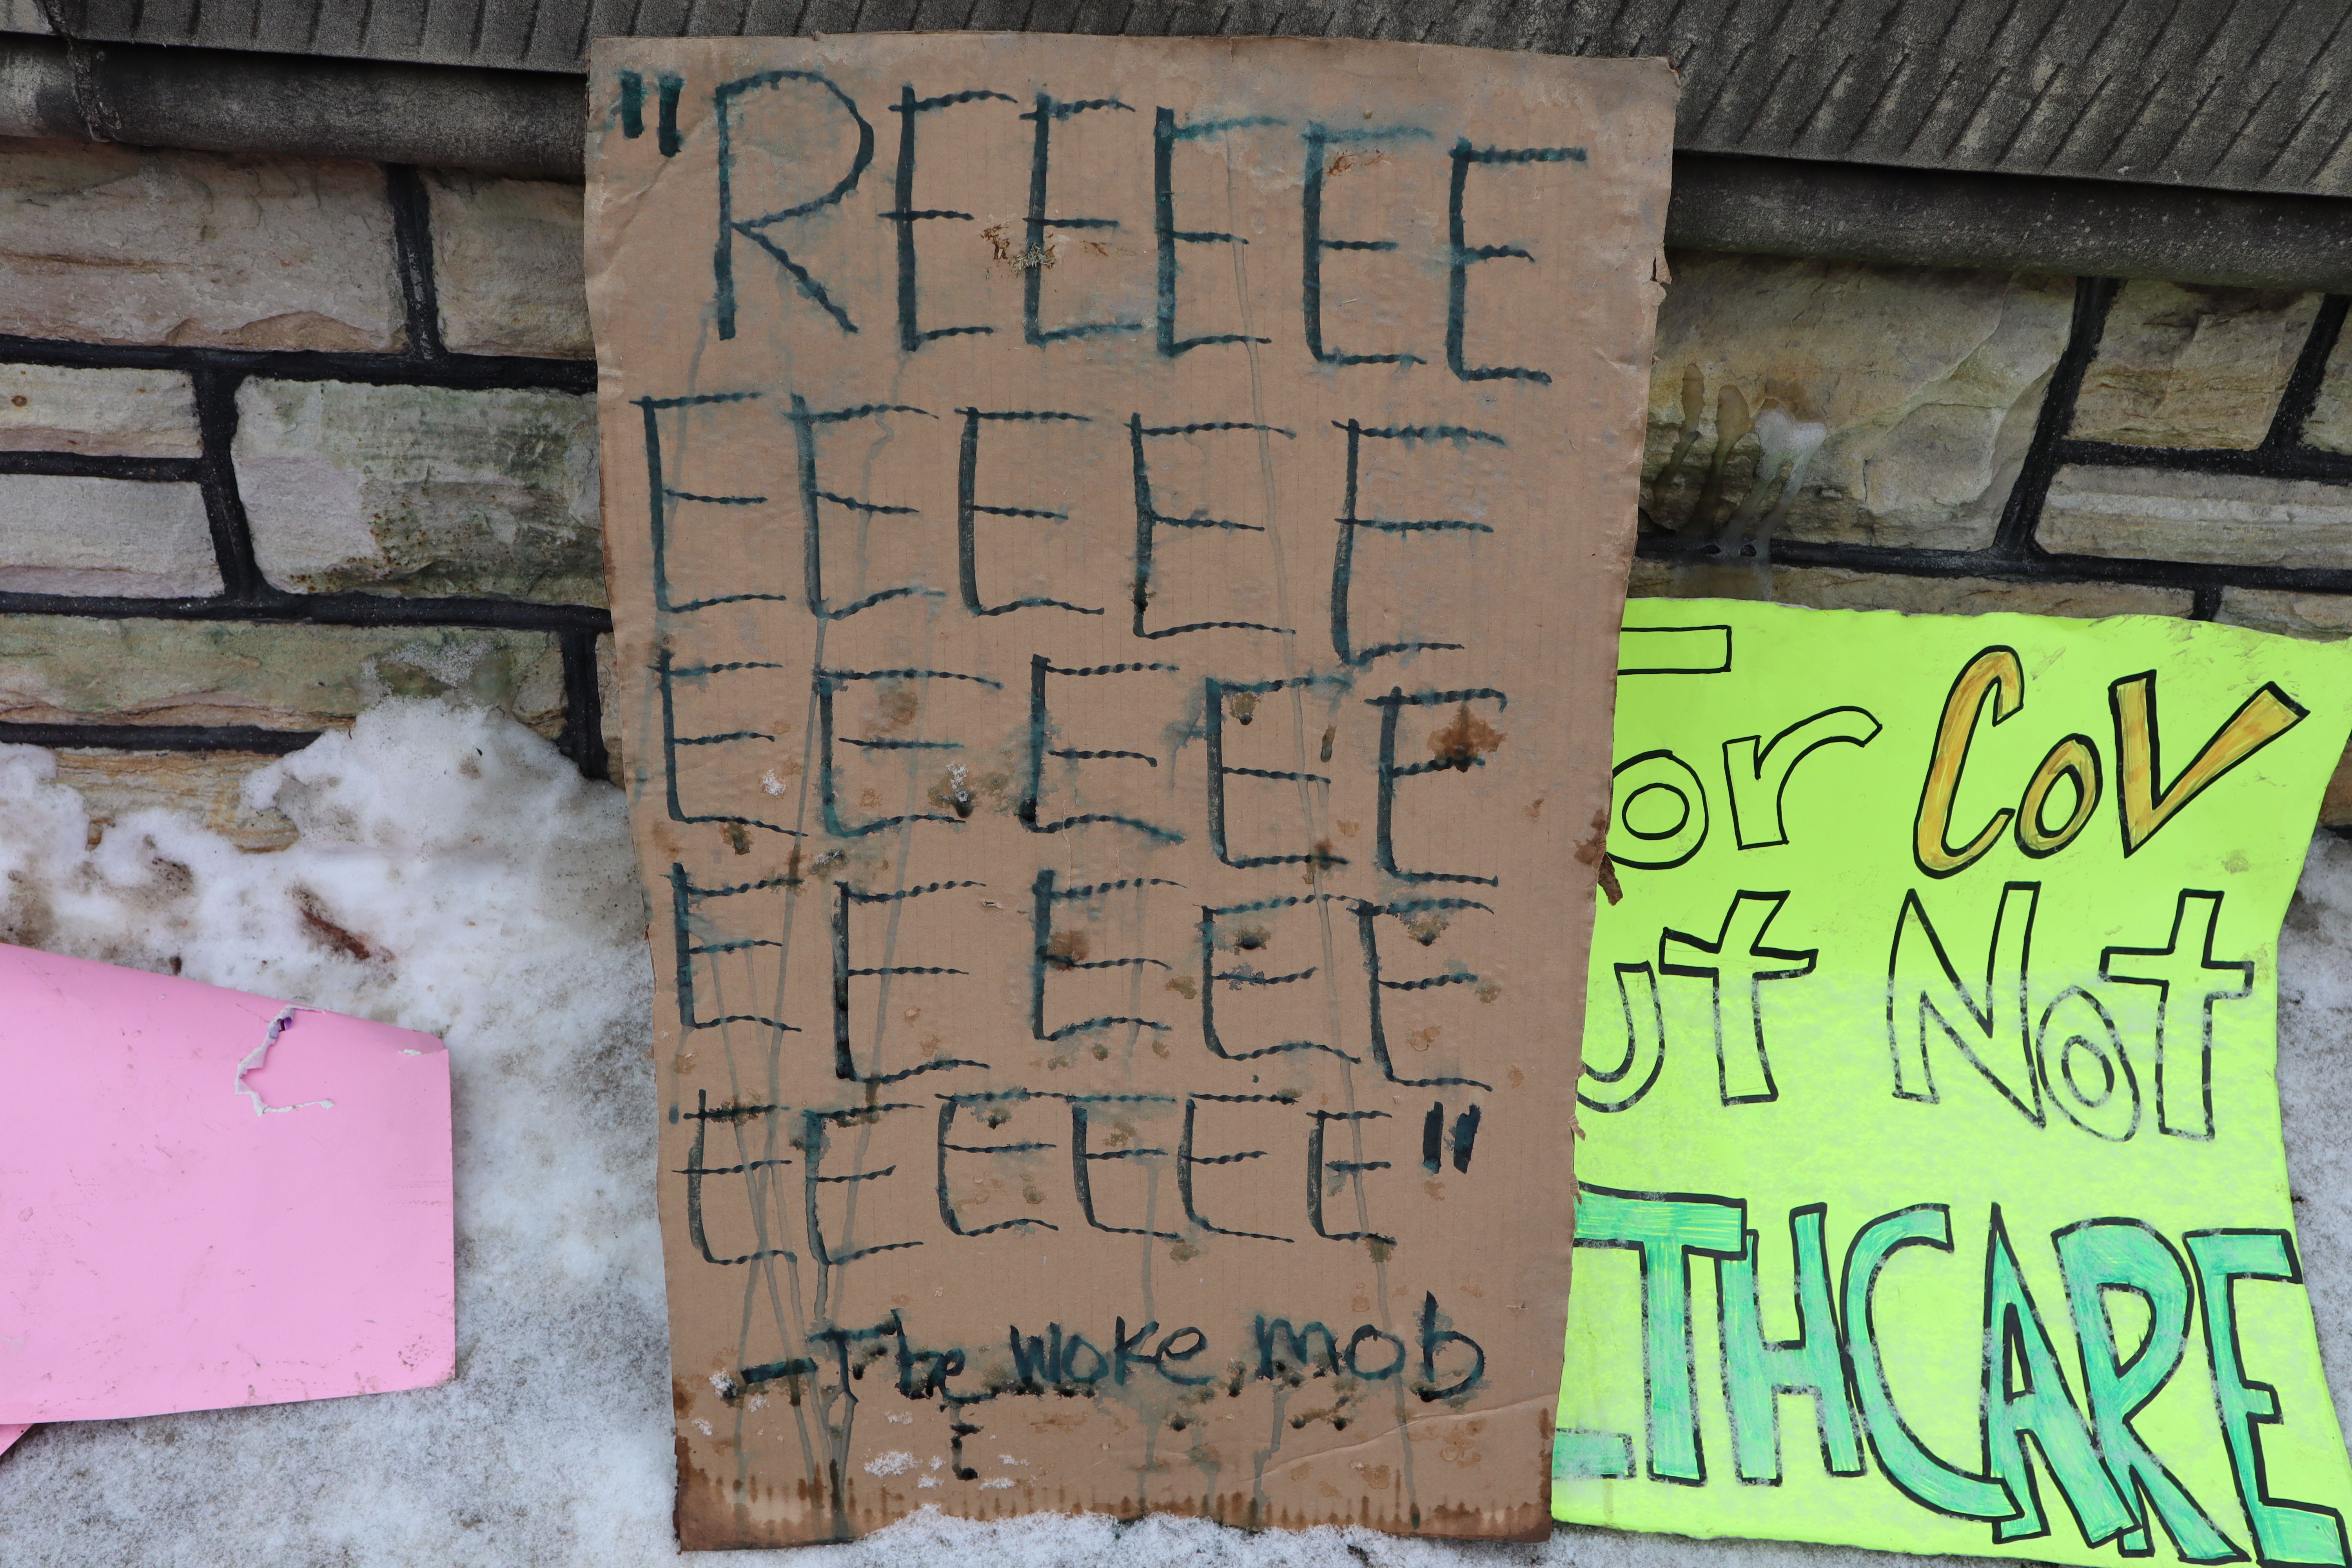 Un carton placé sur une clôture en pierre dans la neige. Il lit "REEEEE .. [21 autres 'E's] - The Woke mob [sic]".